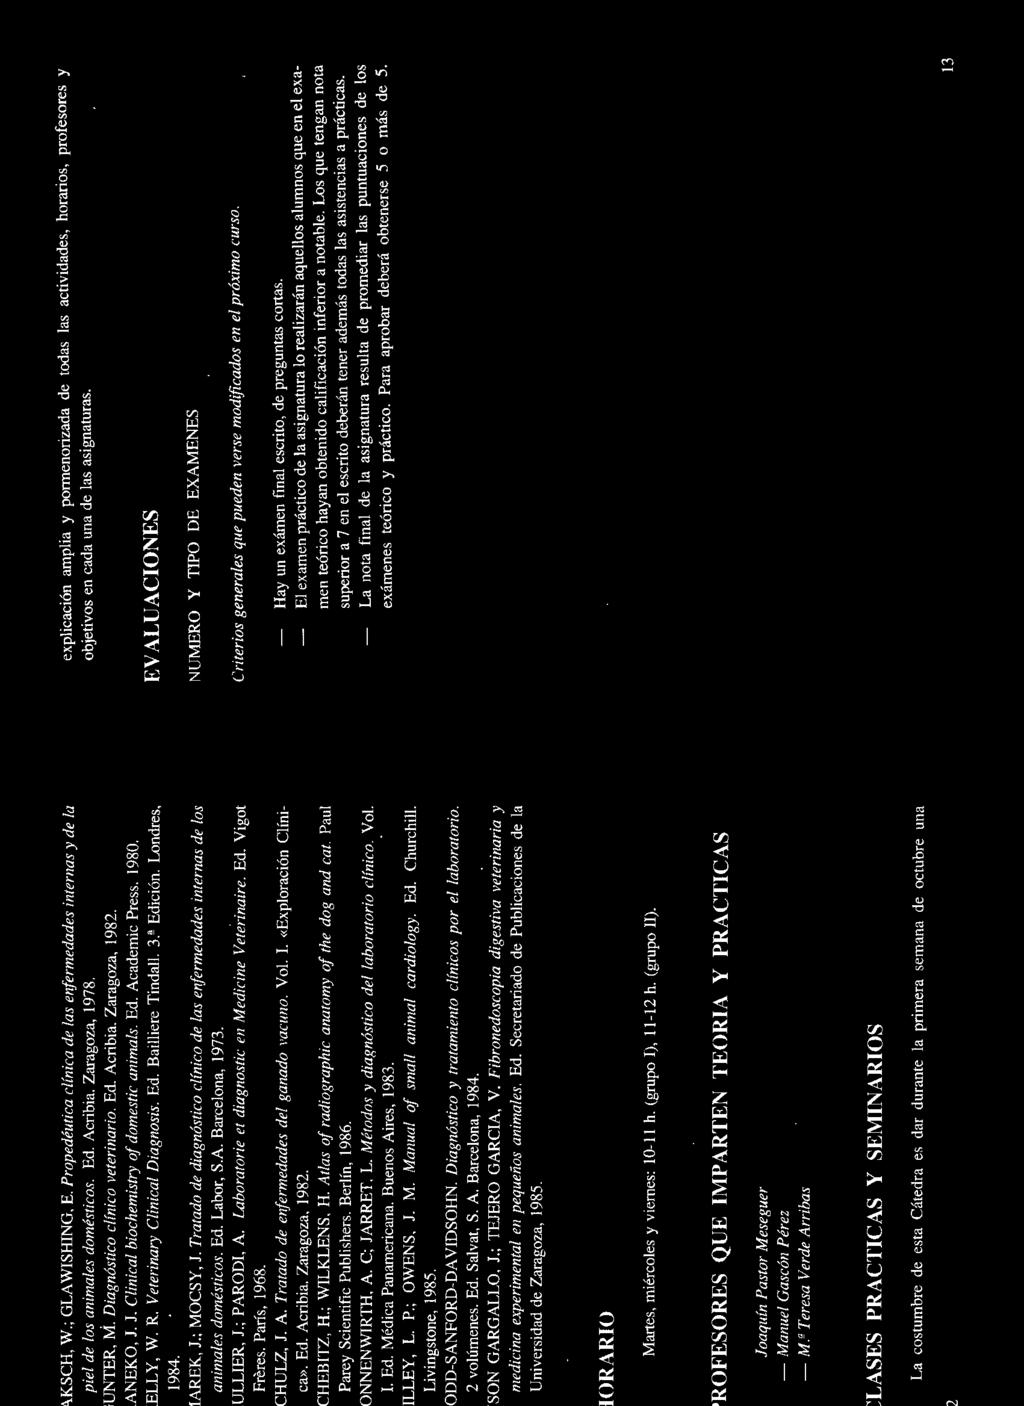 Tratado de diagnóstico clínico de las enfermedades internas de los animales domésticos. Ed. Labor, S.A. Barcelona, 1973. ULLIER, J.; PARODI, A. Laboratorie et diagnostic en Medicine Veterinaire. Ed. Vigot Freres.